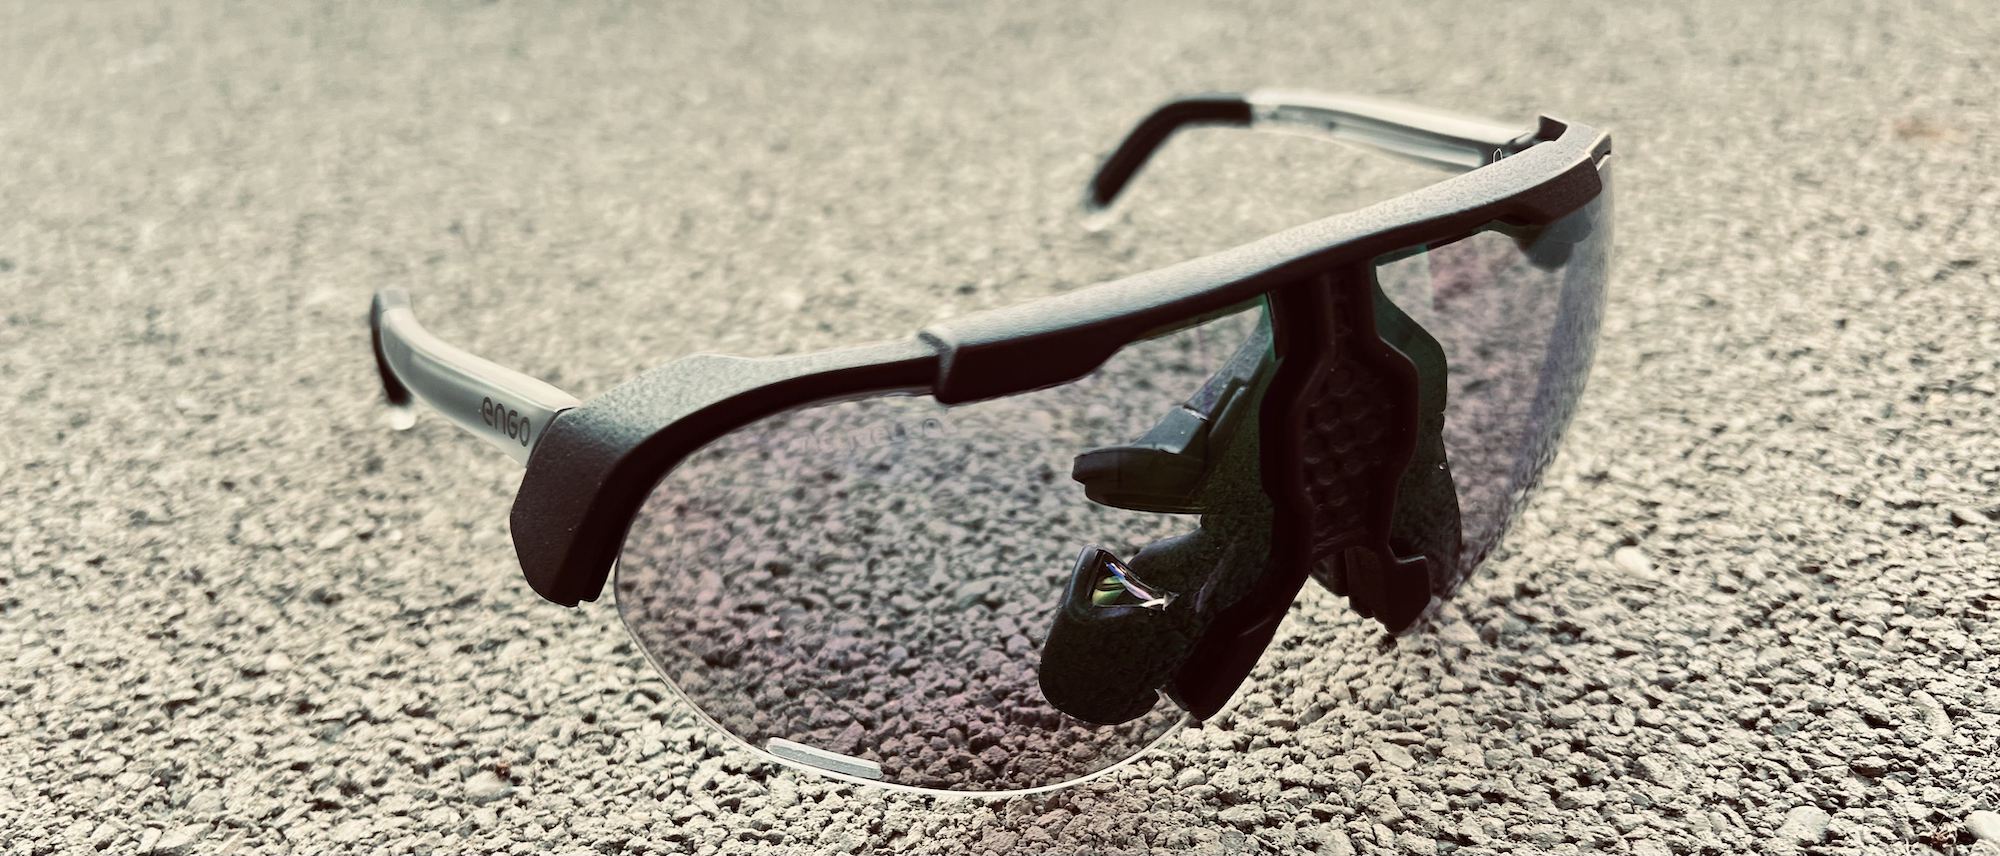 Test] Engo 2 ActiveLook, des lunettes ultra connectées pour sportifs  exigeants